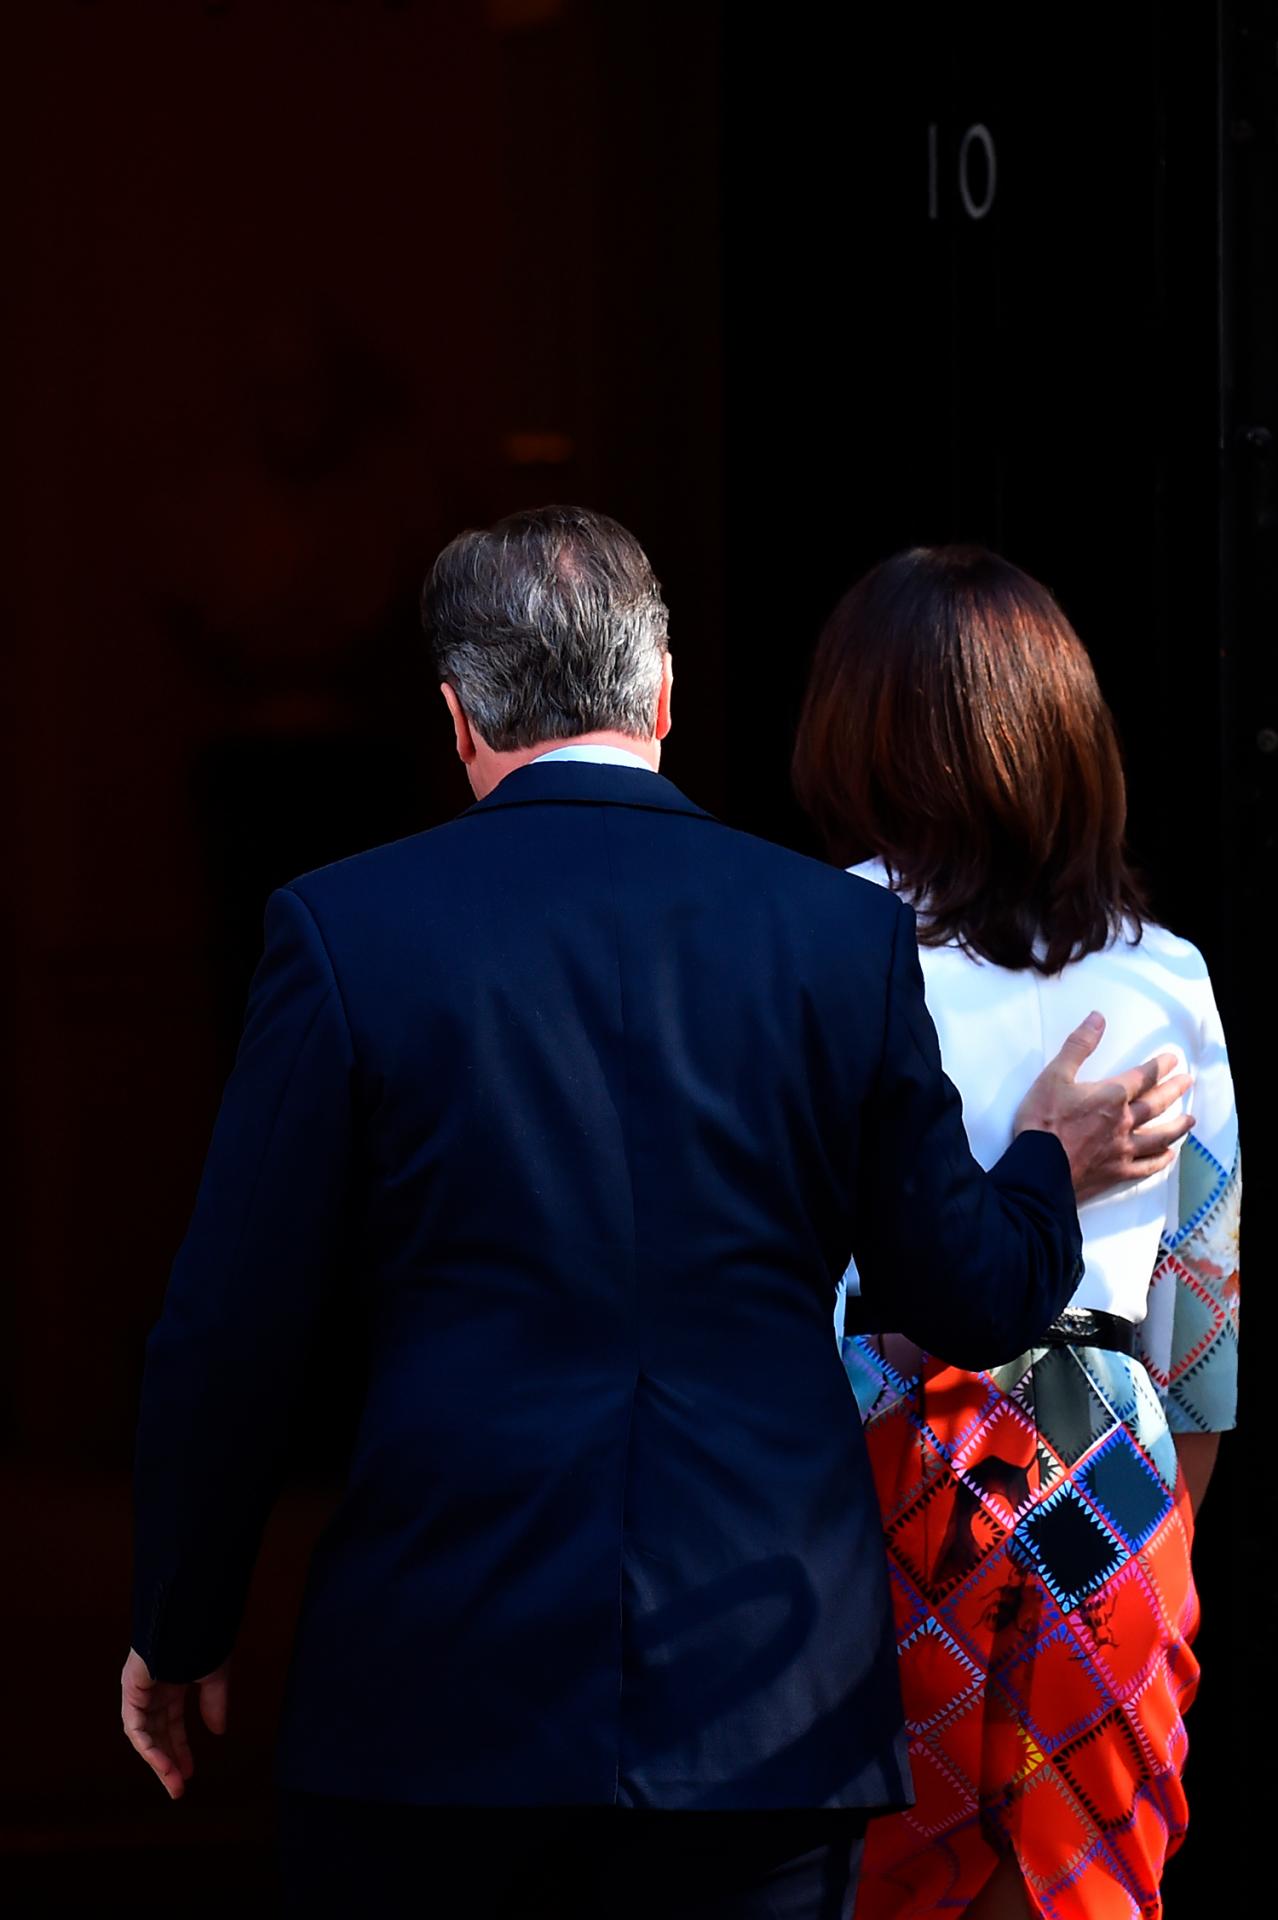 24. jún 2016 Londýn, Spojené kráľovstvo: Vtedajší premiér David Cameron a jeho manželka Samantha vchádzajú do budovy na Downing street 10. Cameron práve v reakcii na výsledok referenda oznámil, že podá demisiu.